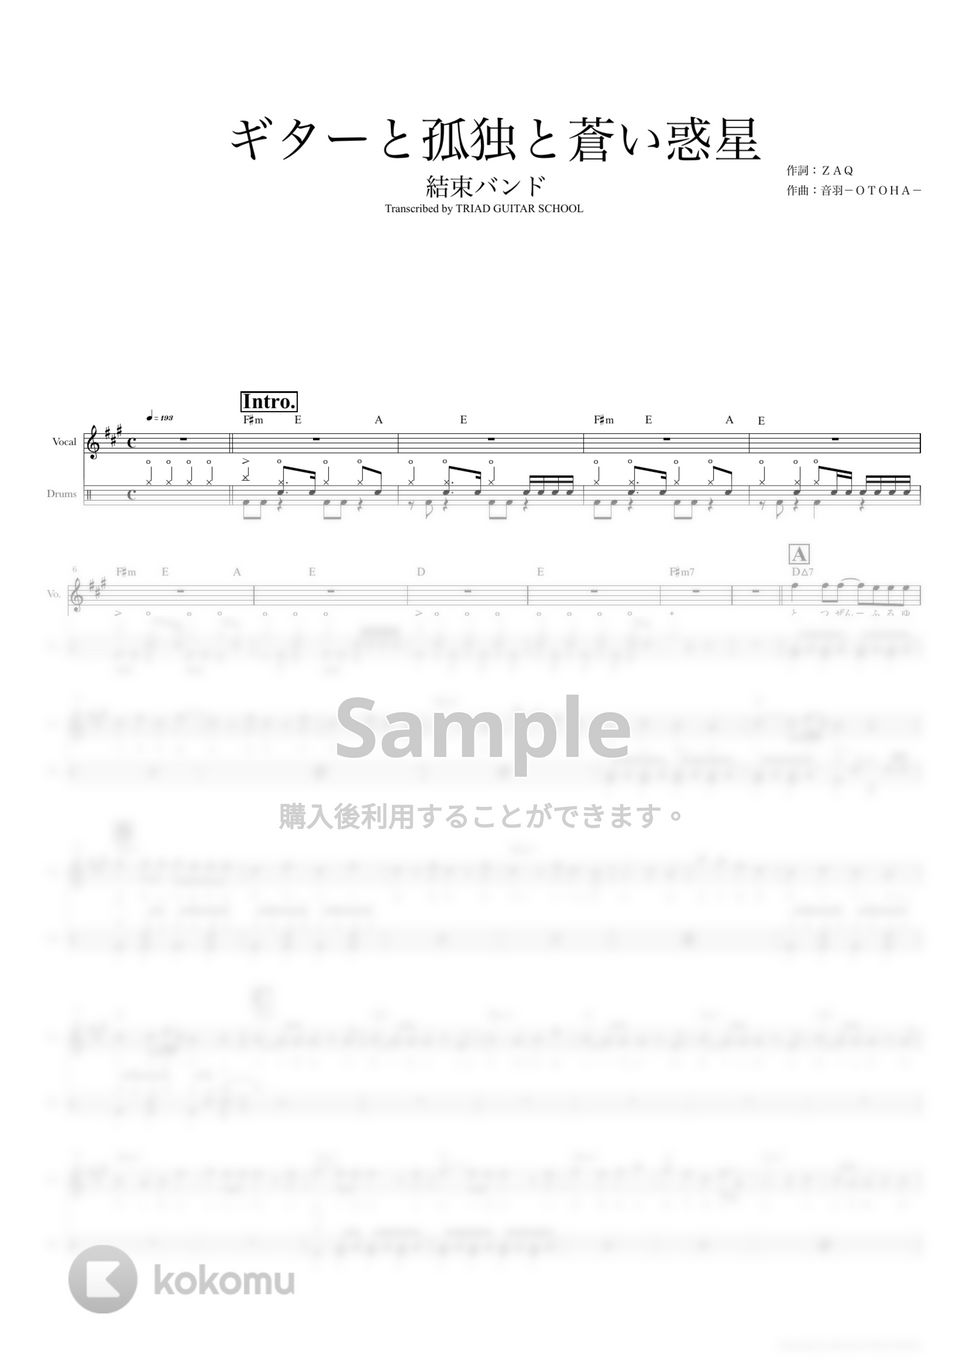 結束バンド - ギターと孤独と蒼い惑星 (ドラムスコア・歌詞・コード付き) by TRIAD GUITAR SCHOOL